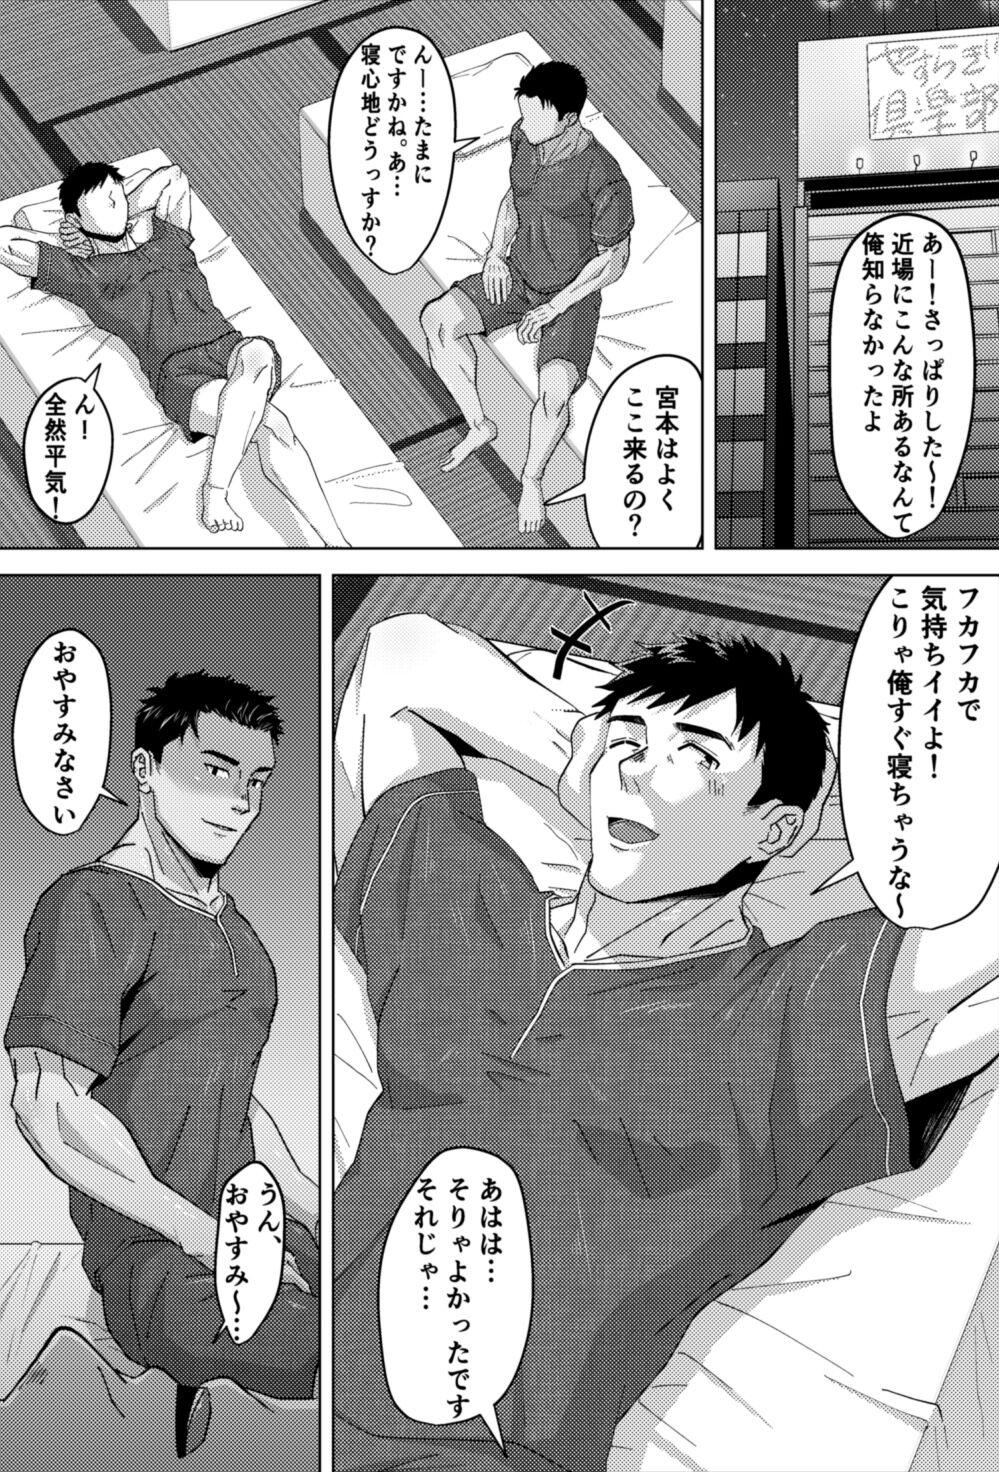 Bro 既婚ノンケの先輩がハッテン場でメス堕ち?! - Original Couple Sex - Page 4